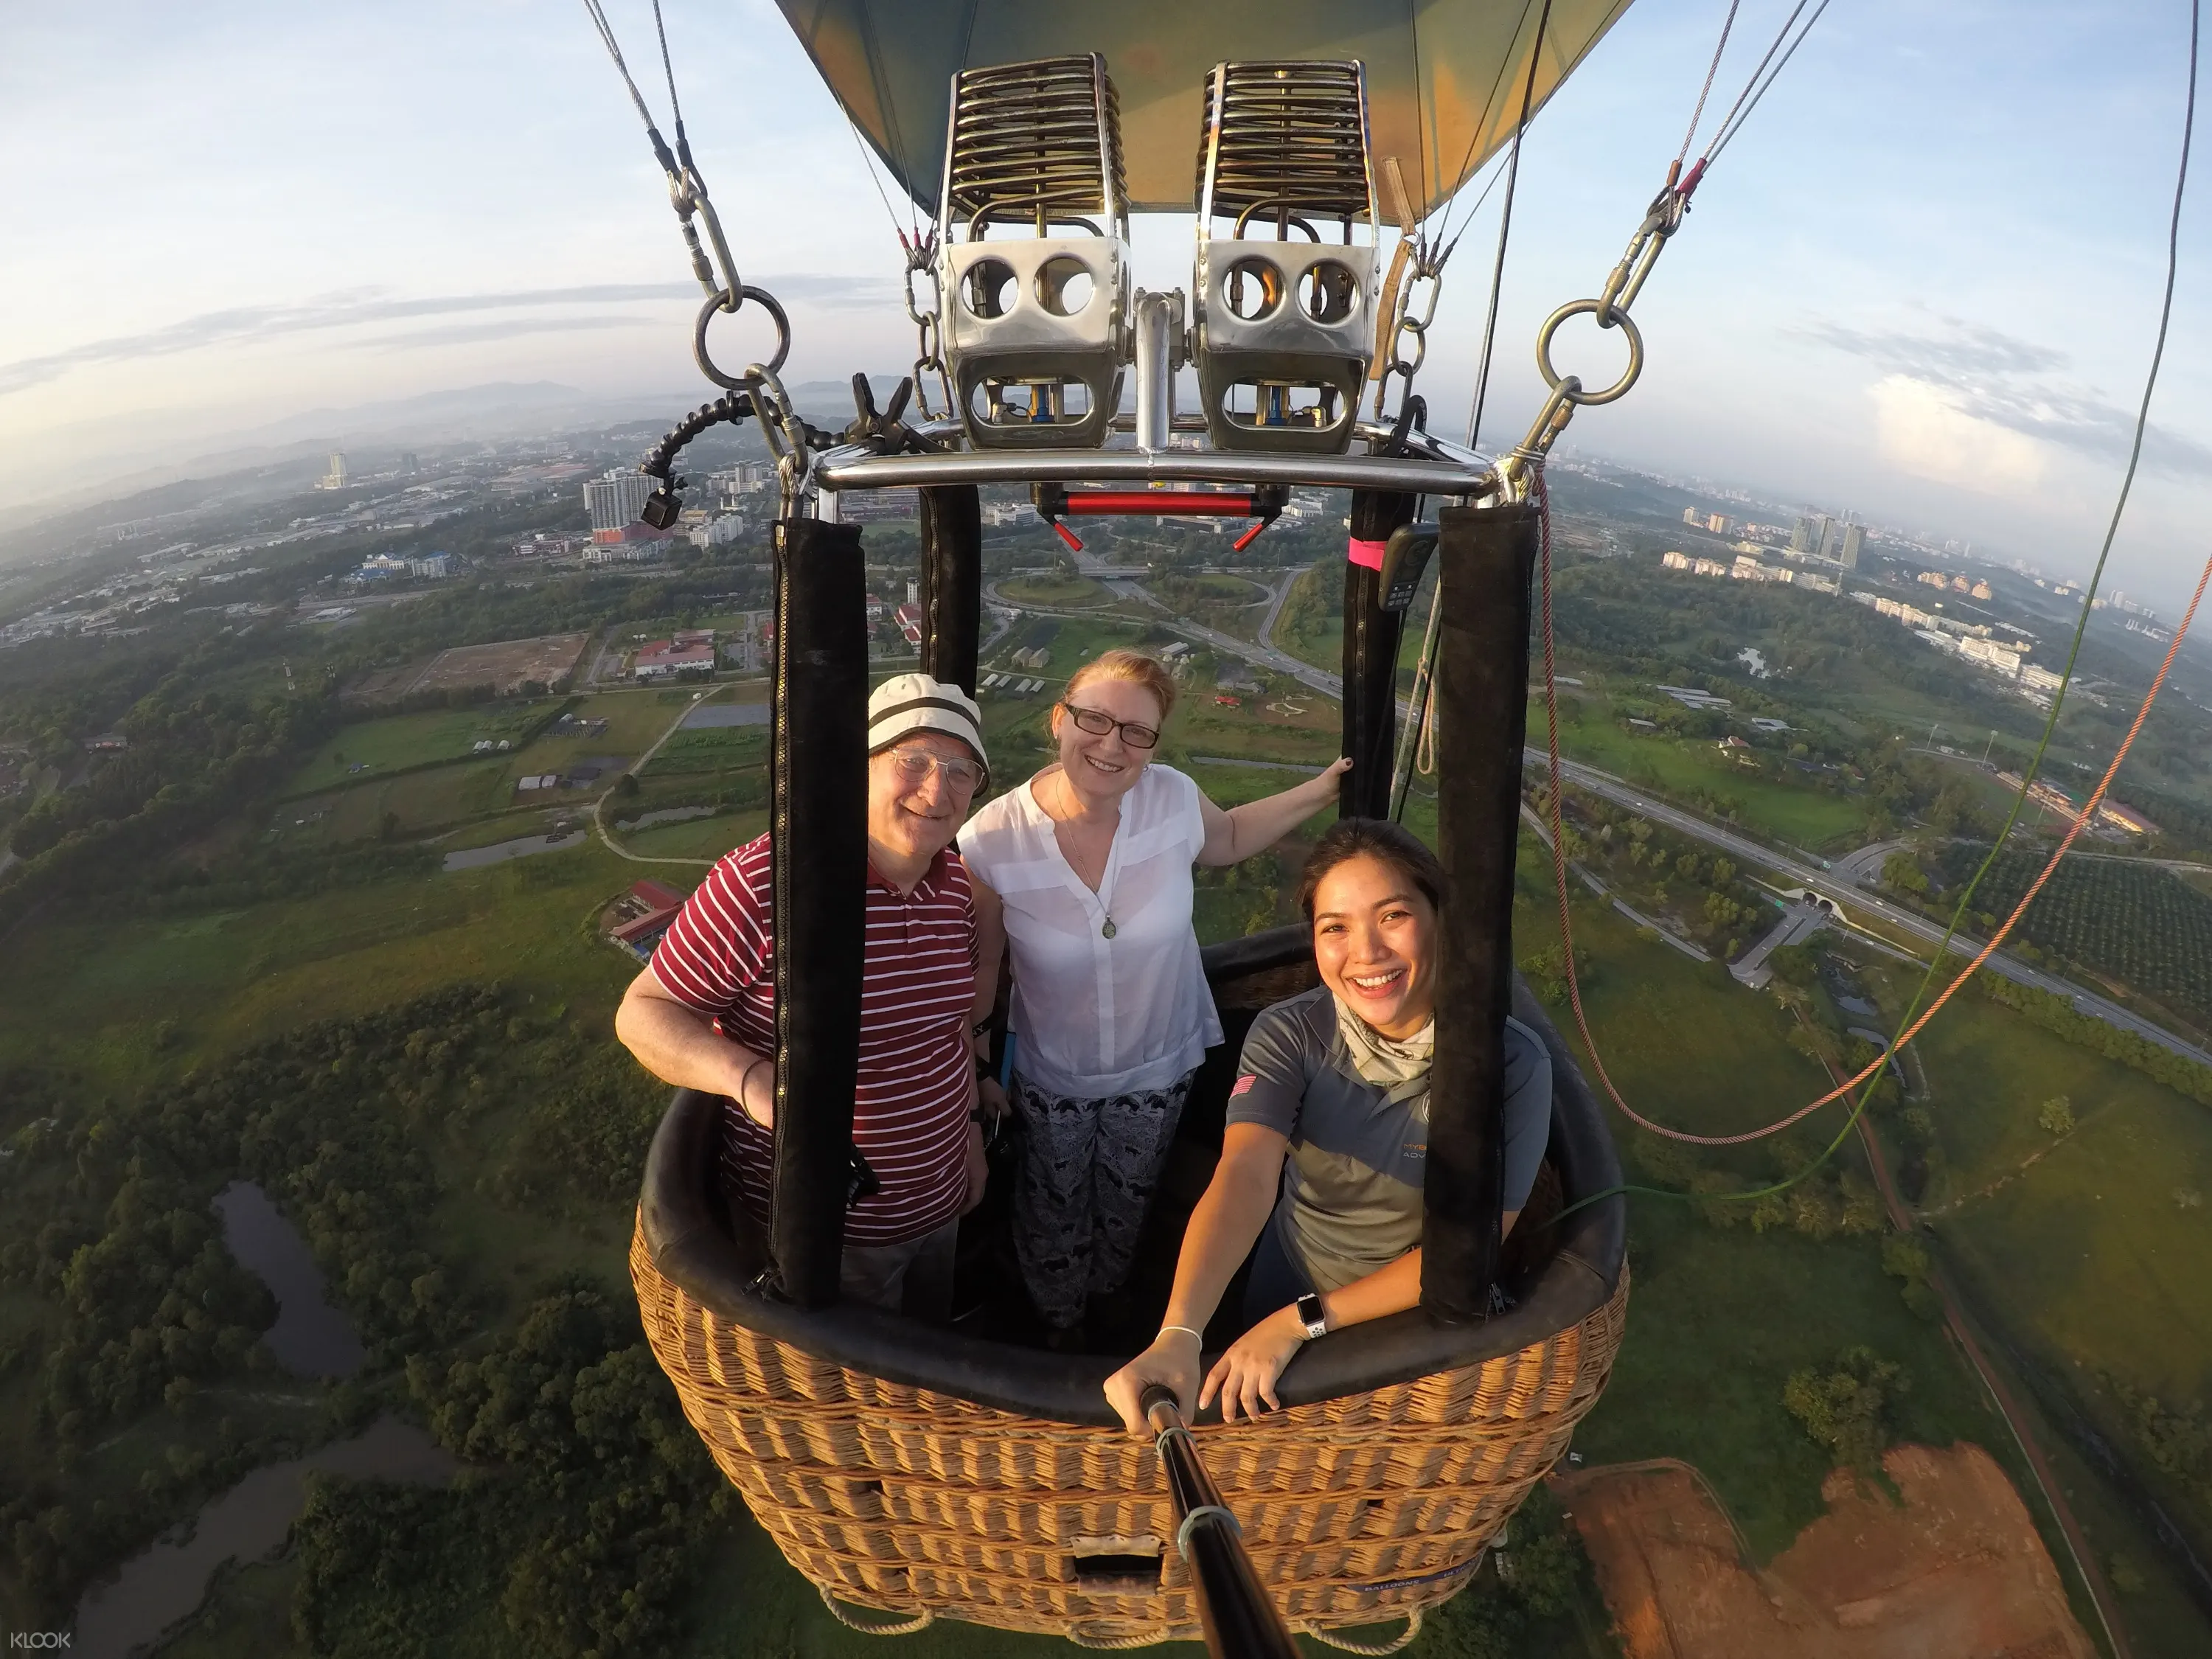 Hot Air Balloon Experience In Kuala Lumpur Malaysia